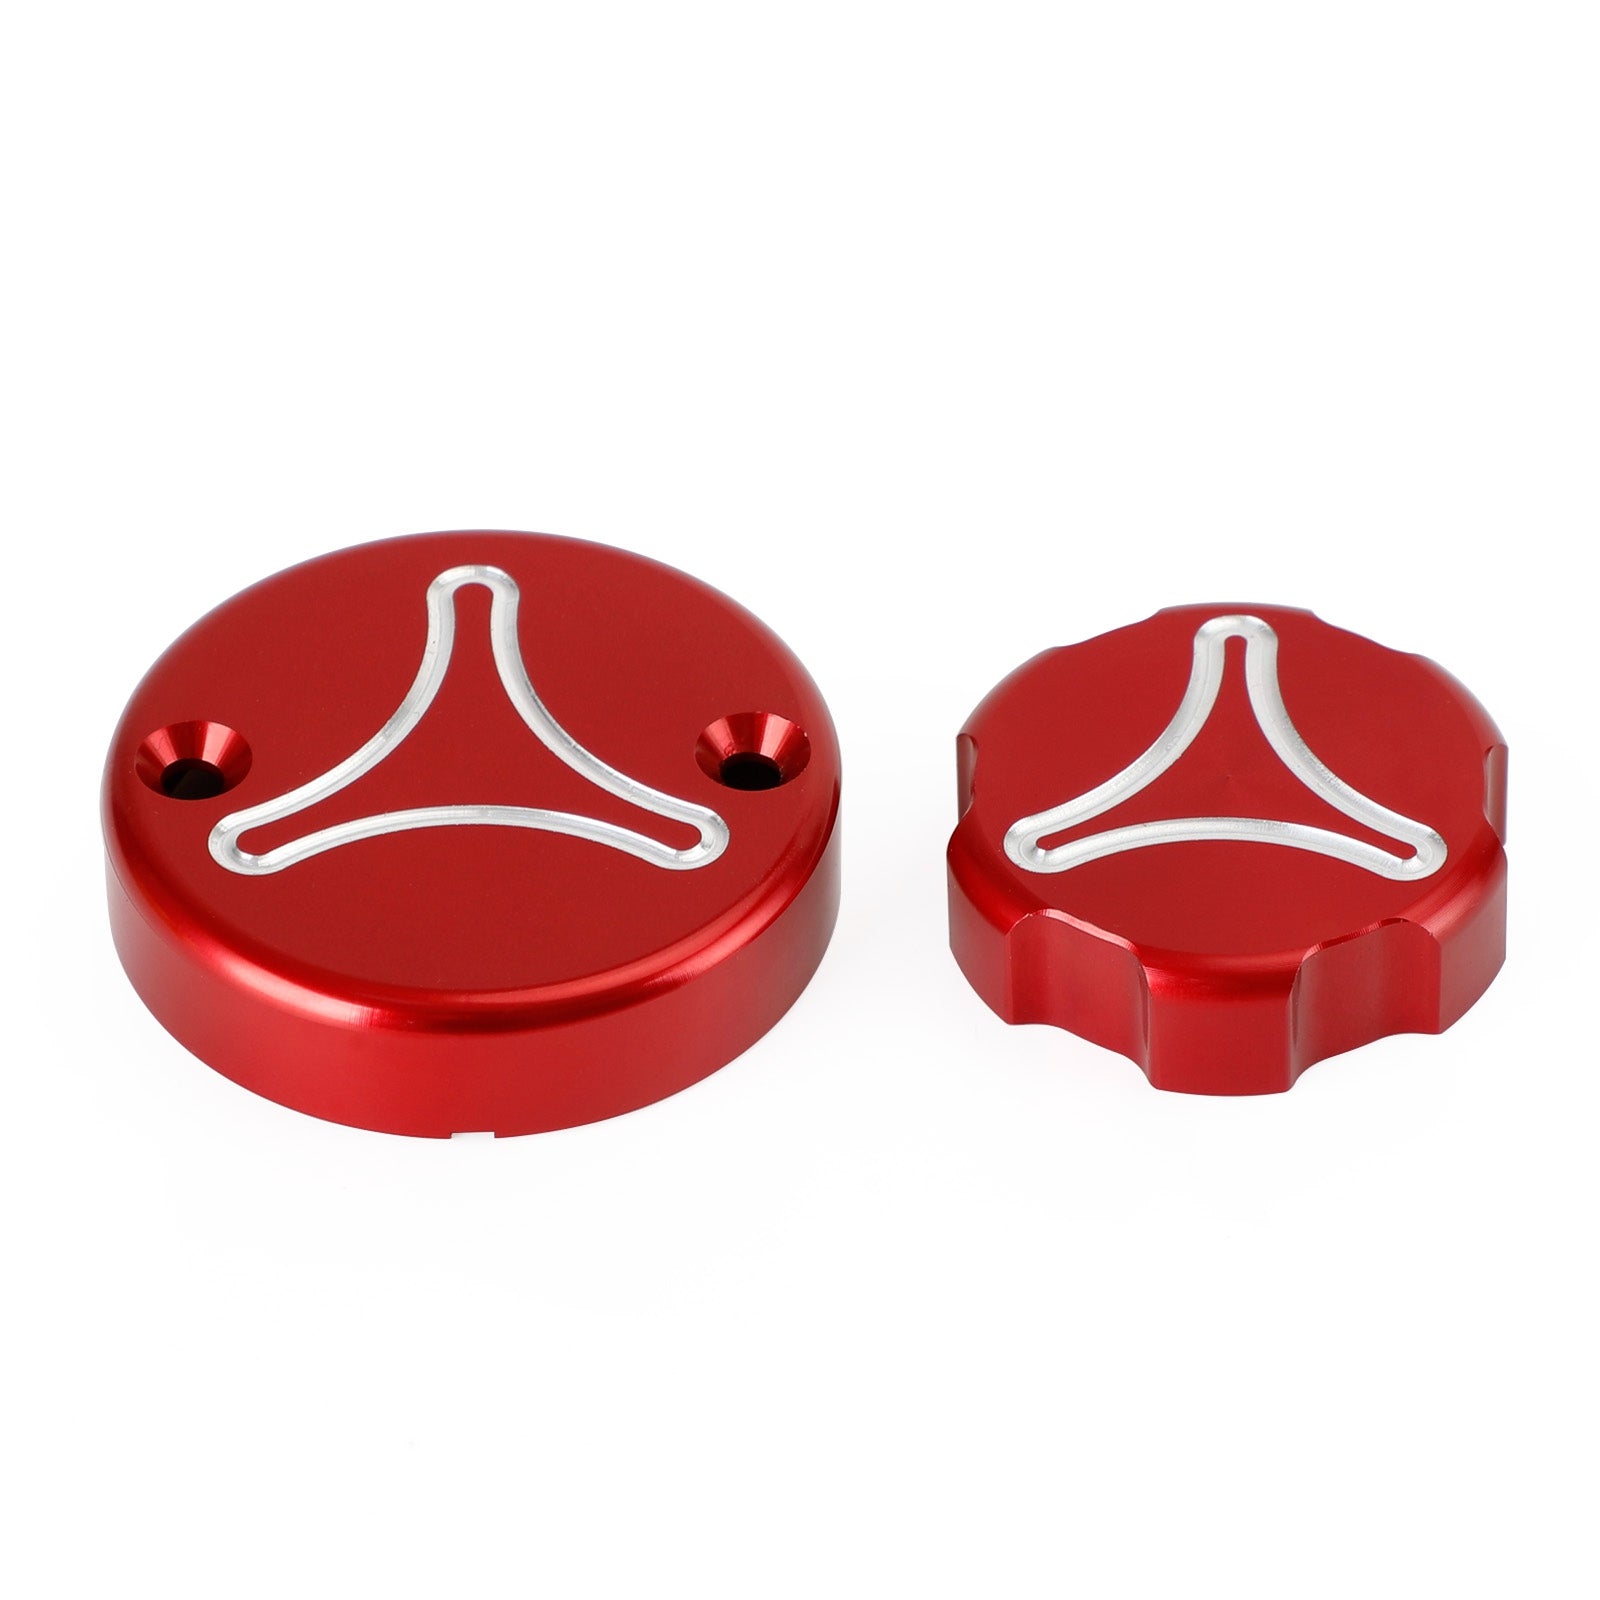 Bouchon réservoir frein rouge pour Ducati Panigale 899 959 1199 1299 V2 V4 S R